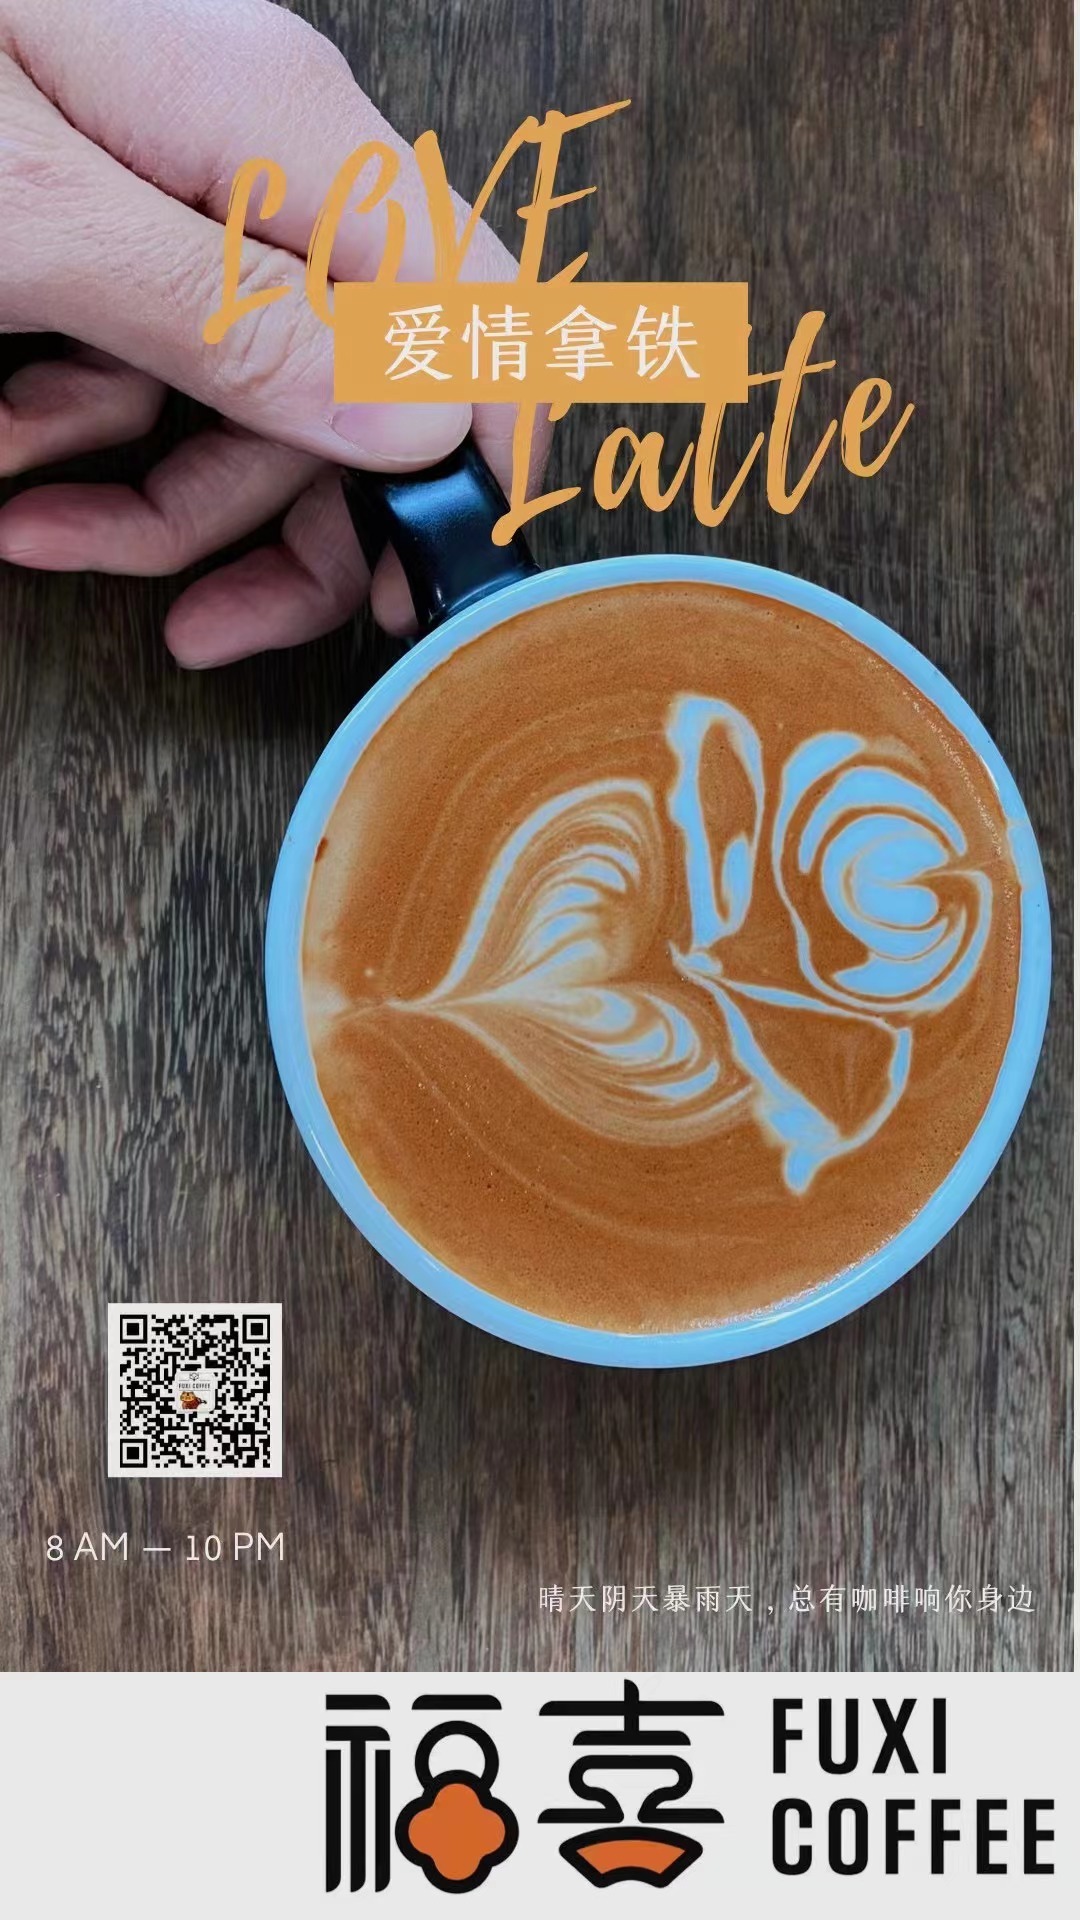 咖啡店新春海报与产品宣传海报图1